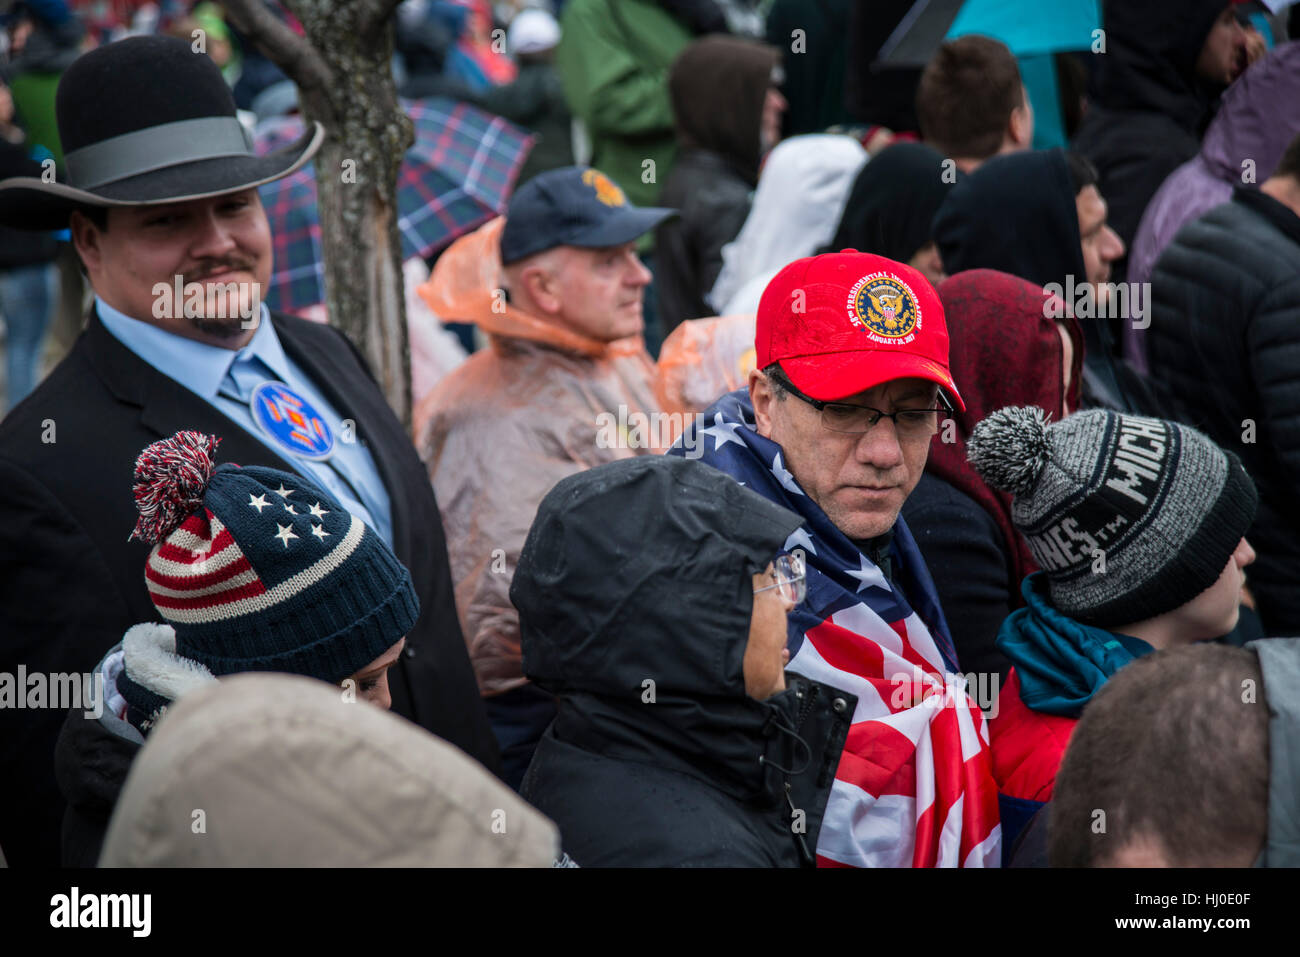 No-blanco Donald Trump partidario caballero nativo americano todo el camino de Montana, en una gran multitud de gente que espera el comienzo del desfile inaugural a lo largo de Pennsylvania Ave. Trump se convirtió en el 45 presidente de los Estados Unidos. 20 de enero de 2017 en Washington, DC Foto de stock